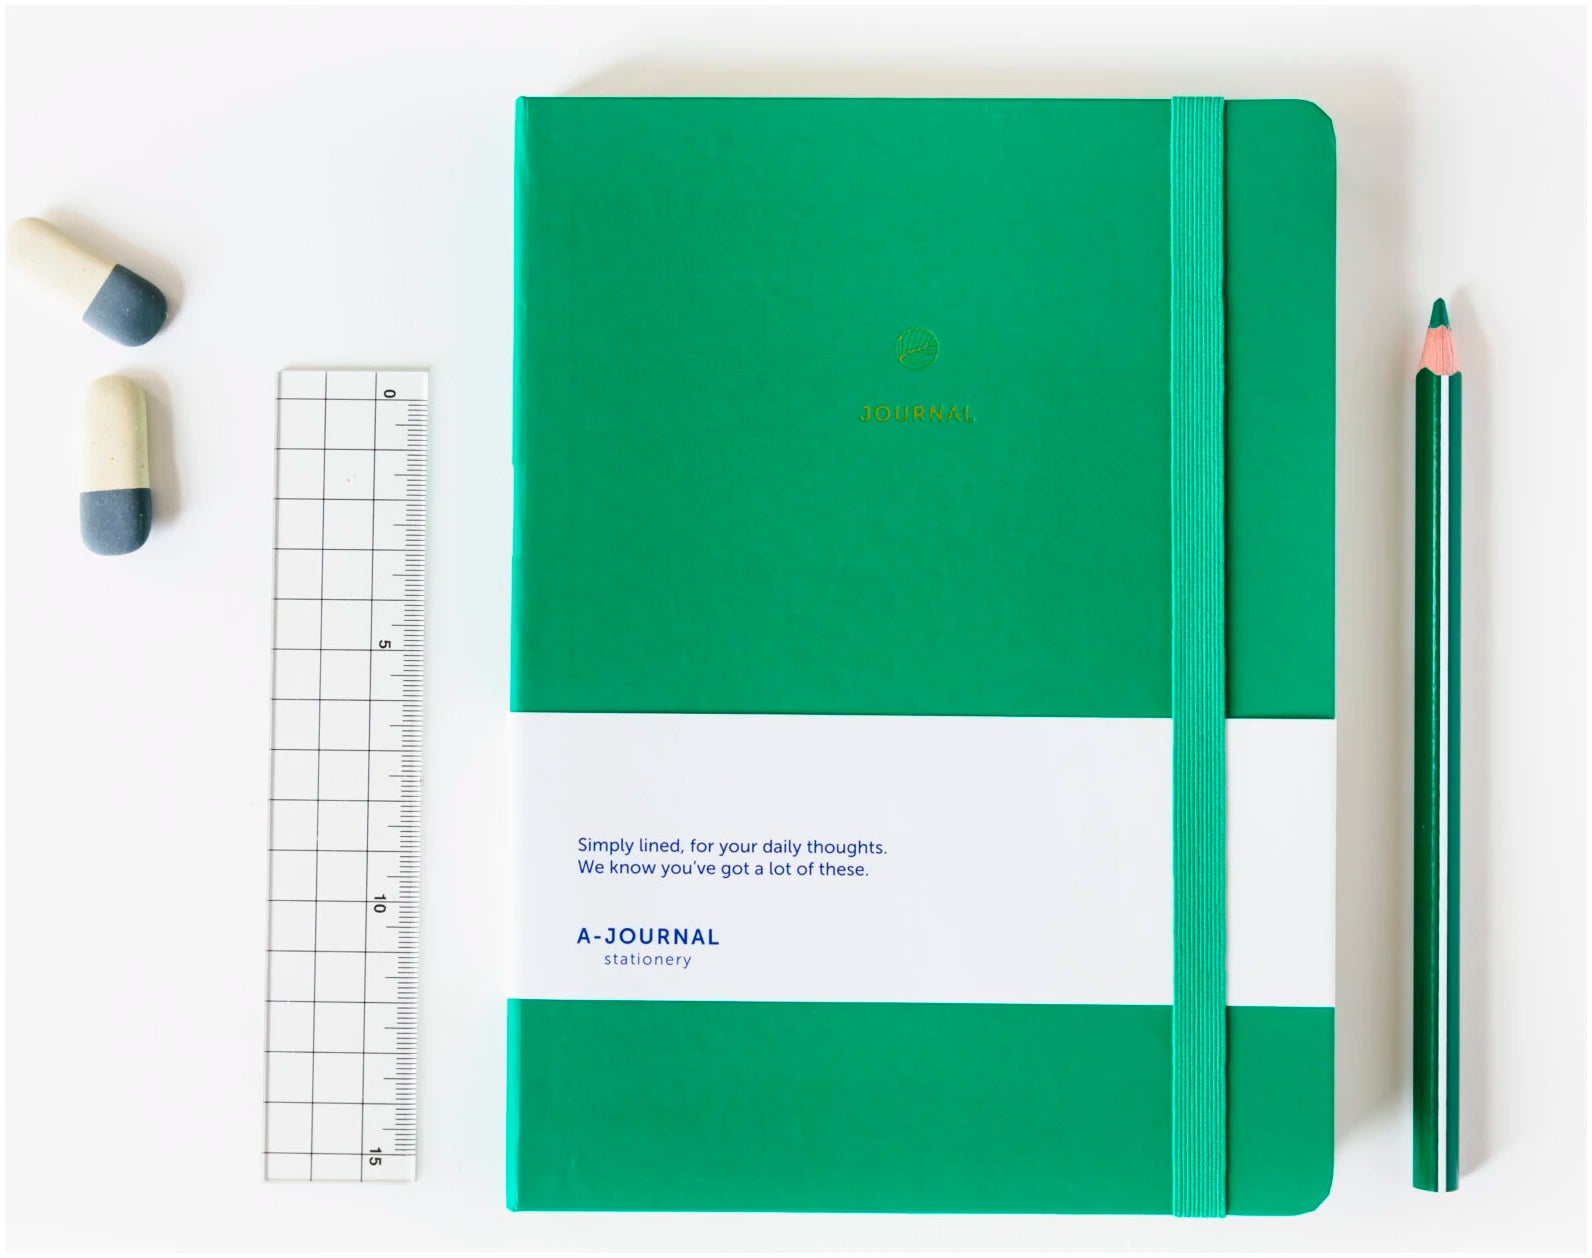 Journal Notebook – emerald green